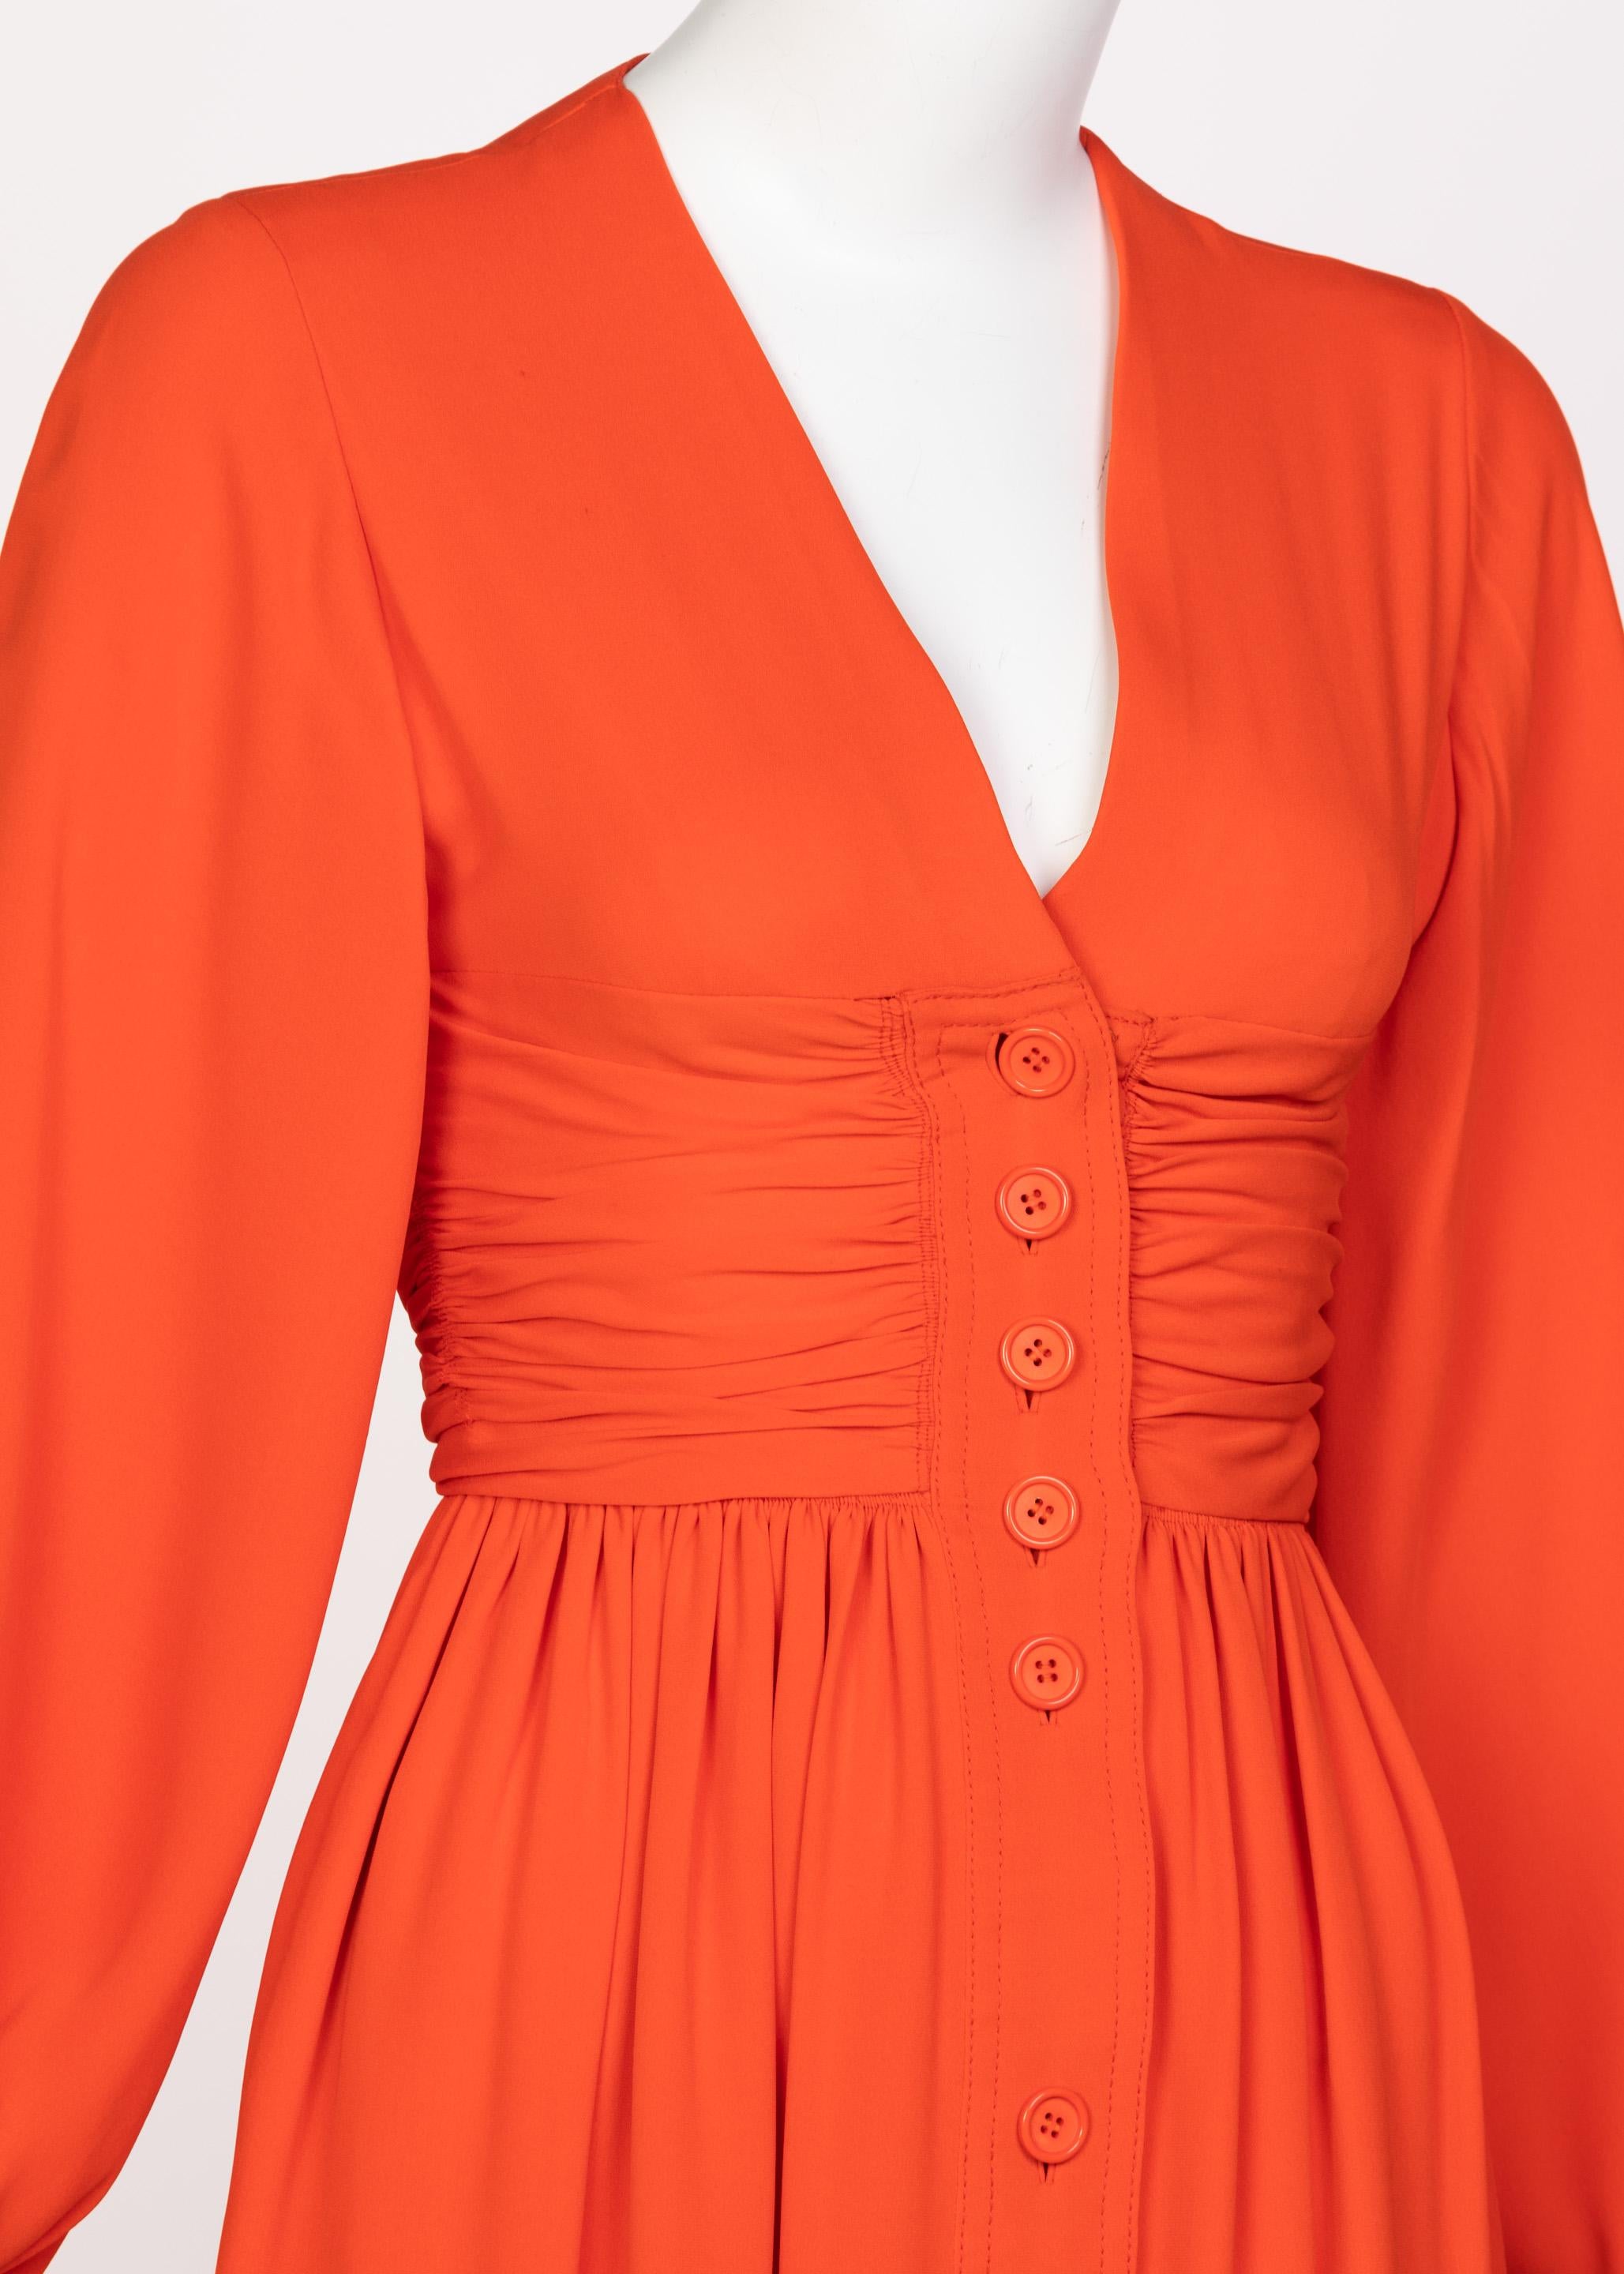 Galanos Orange Silk Plunge Neck Bishop Sleeve Dress, 1970s In Excellent Condition In Boca Raton, FL